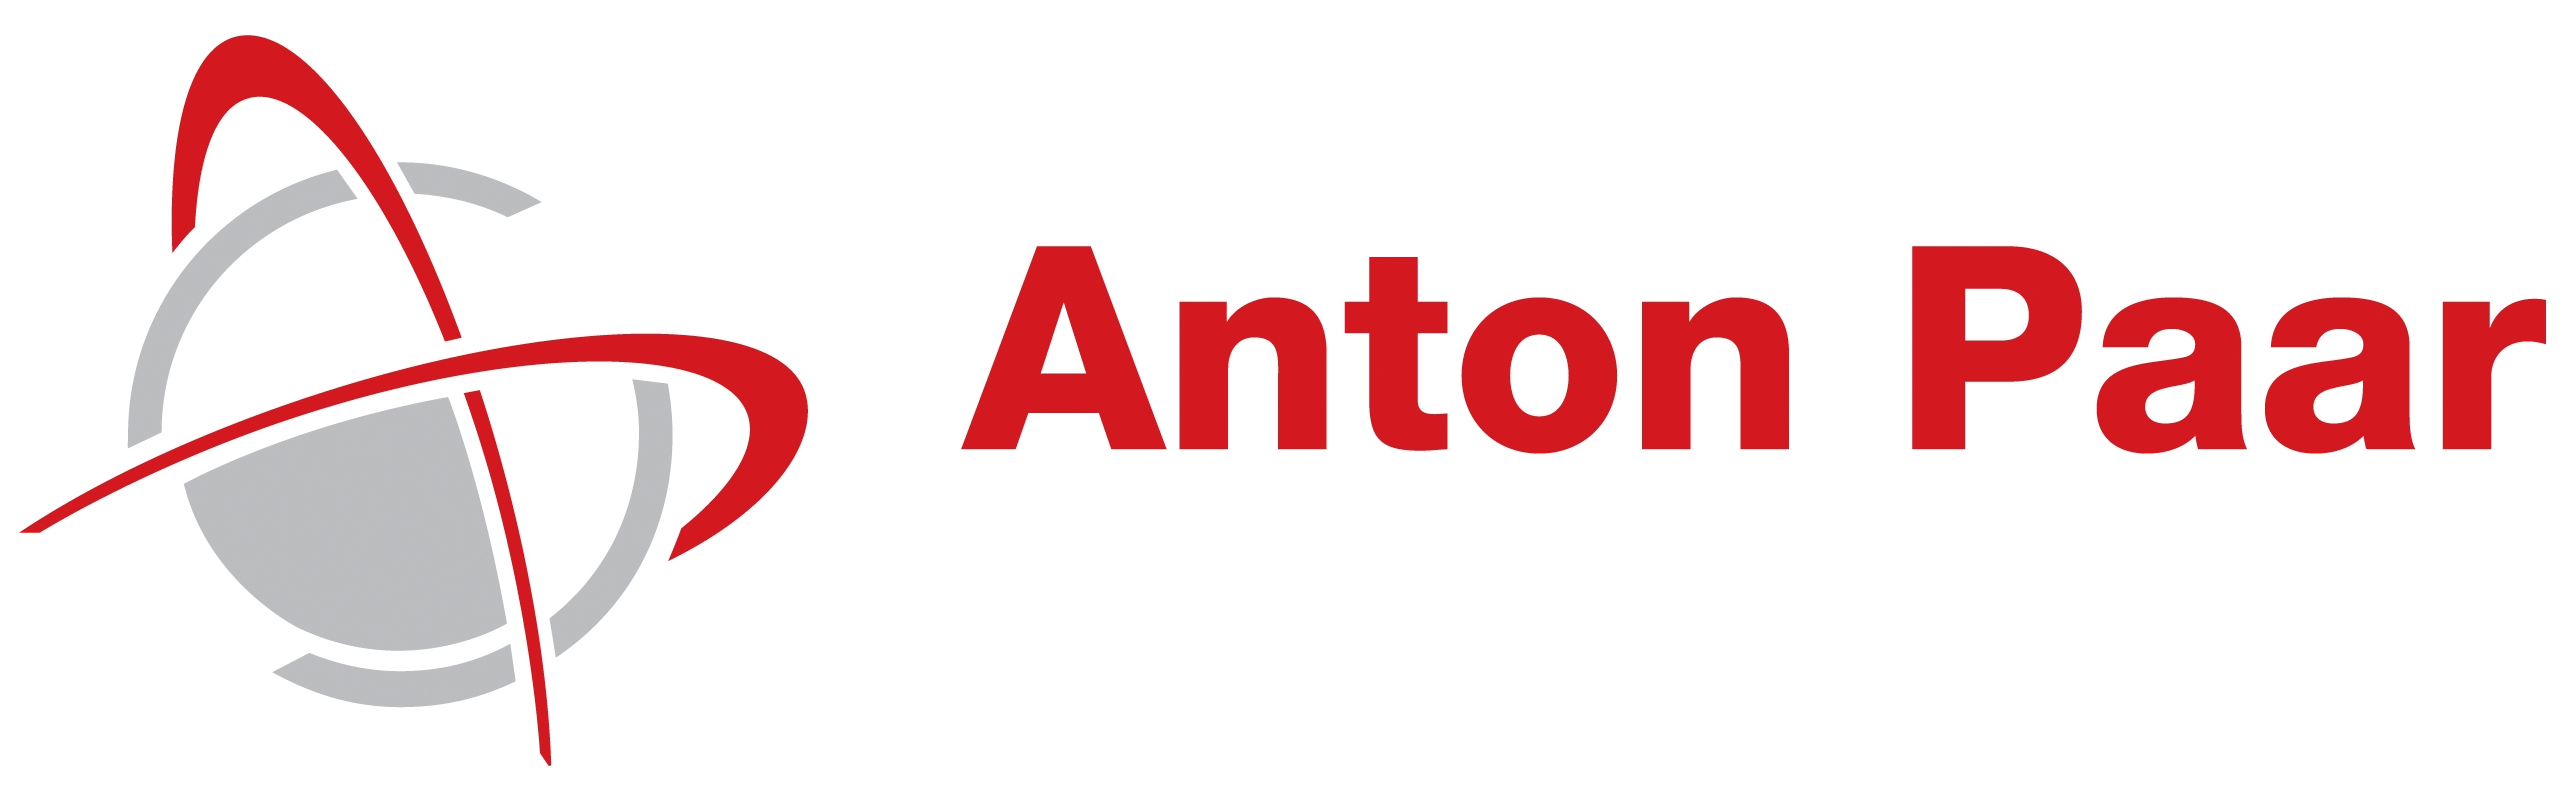 Anton_Paar_Logo_petit.png